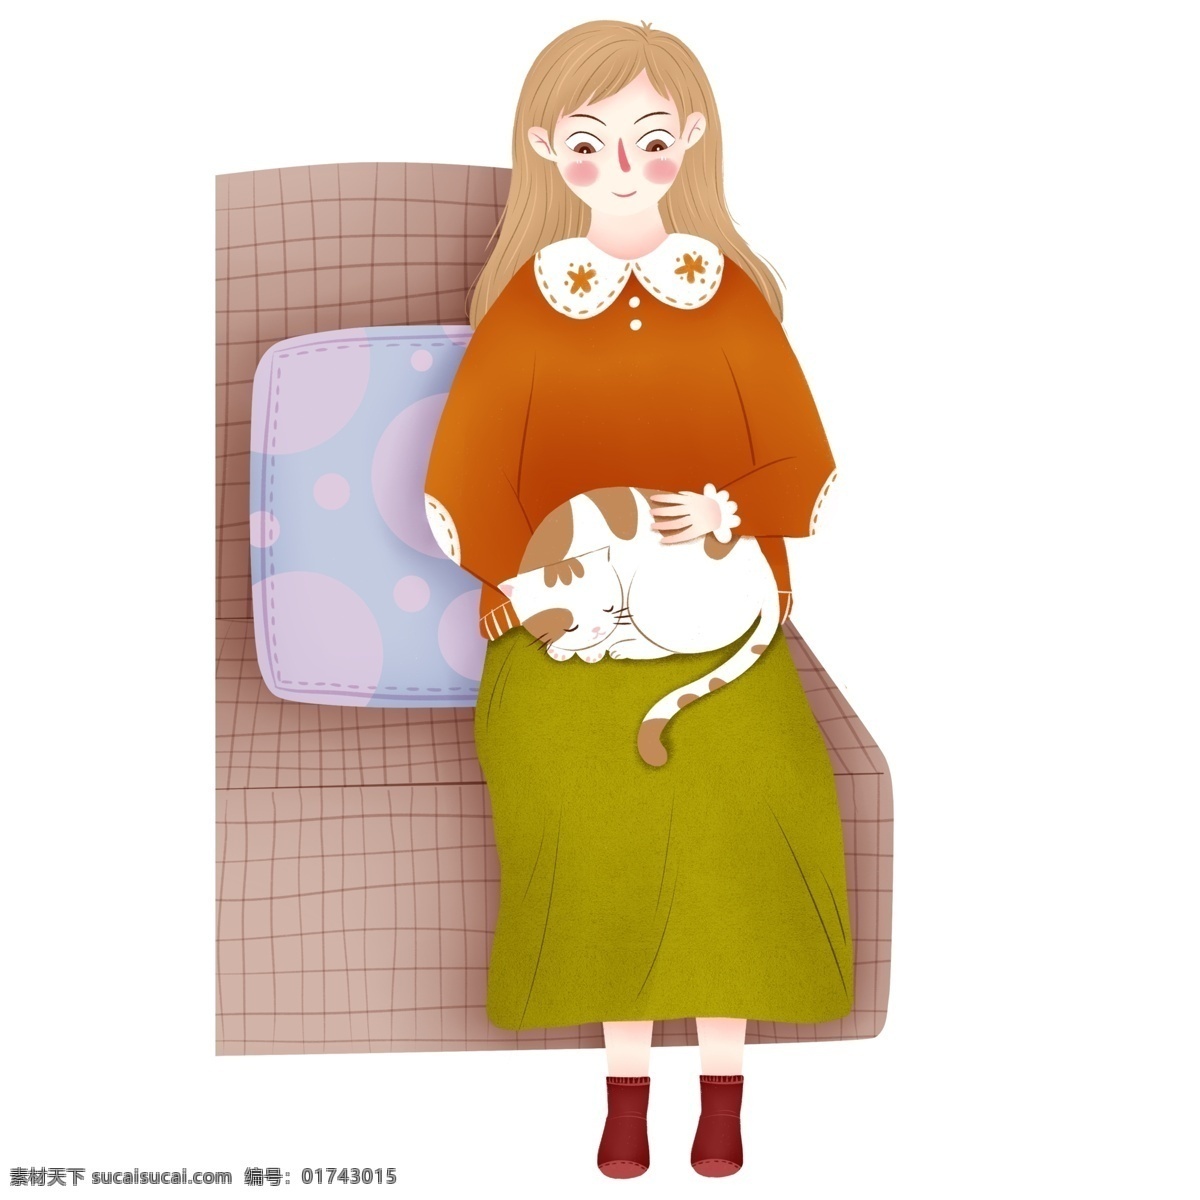 抱 猫 坐在 沙发 上 女孩 元素 卡通 可爱女孩 人物元素 精致人物 手绘元素 装饰图案 设计元素 卡通元素